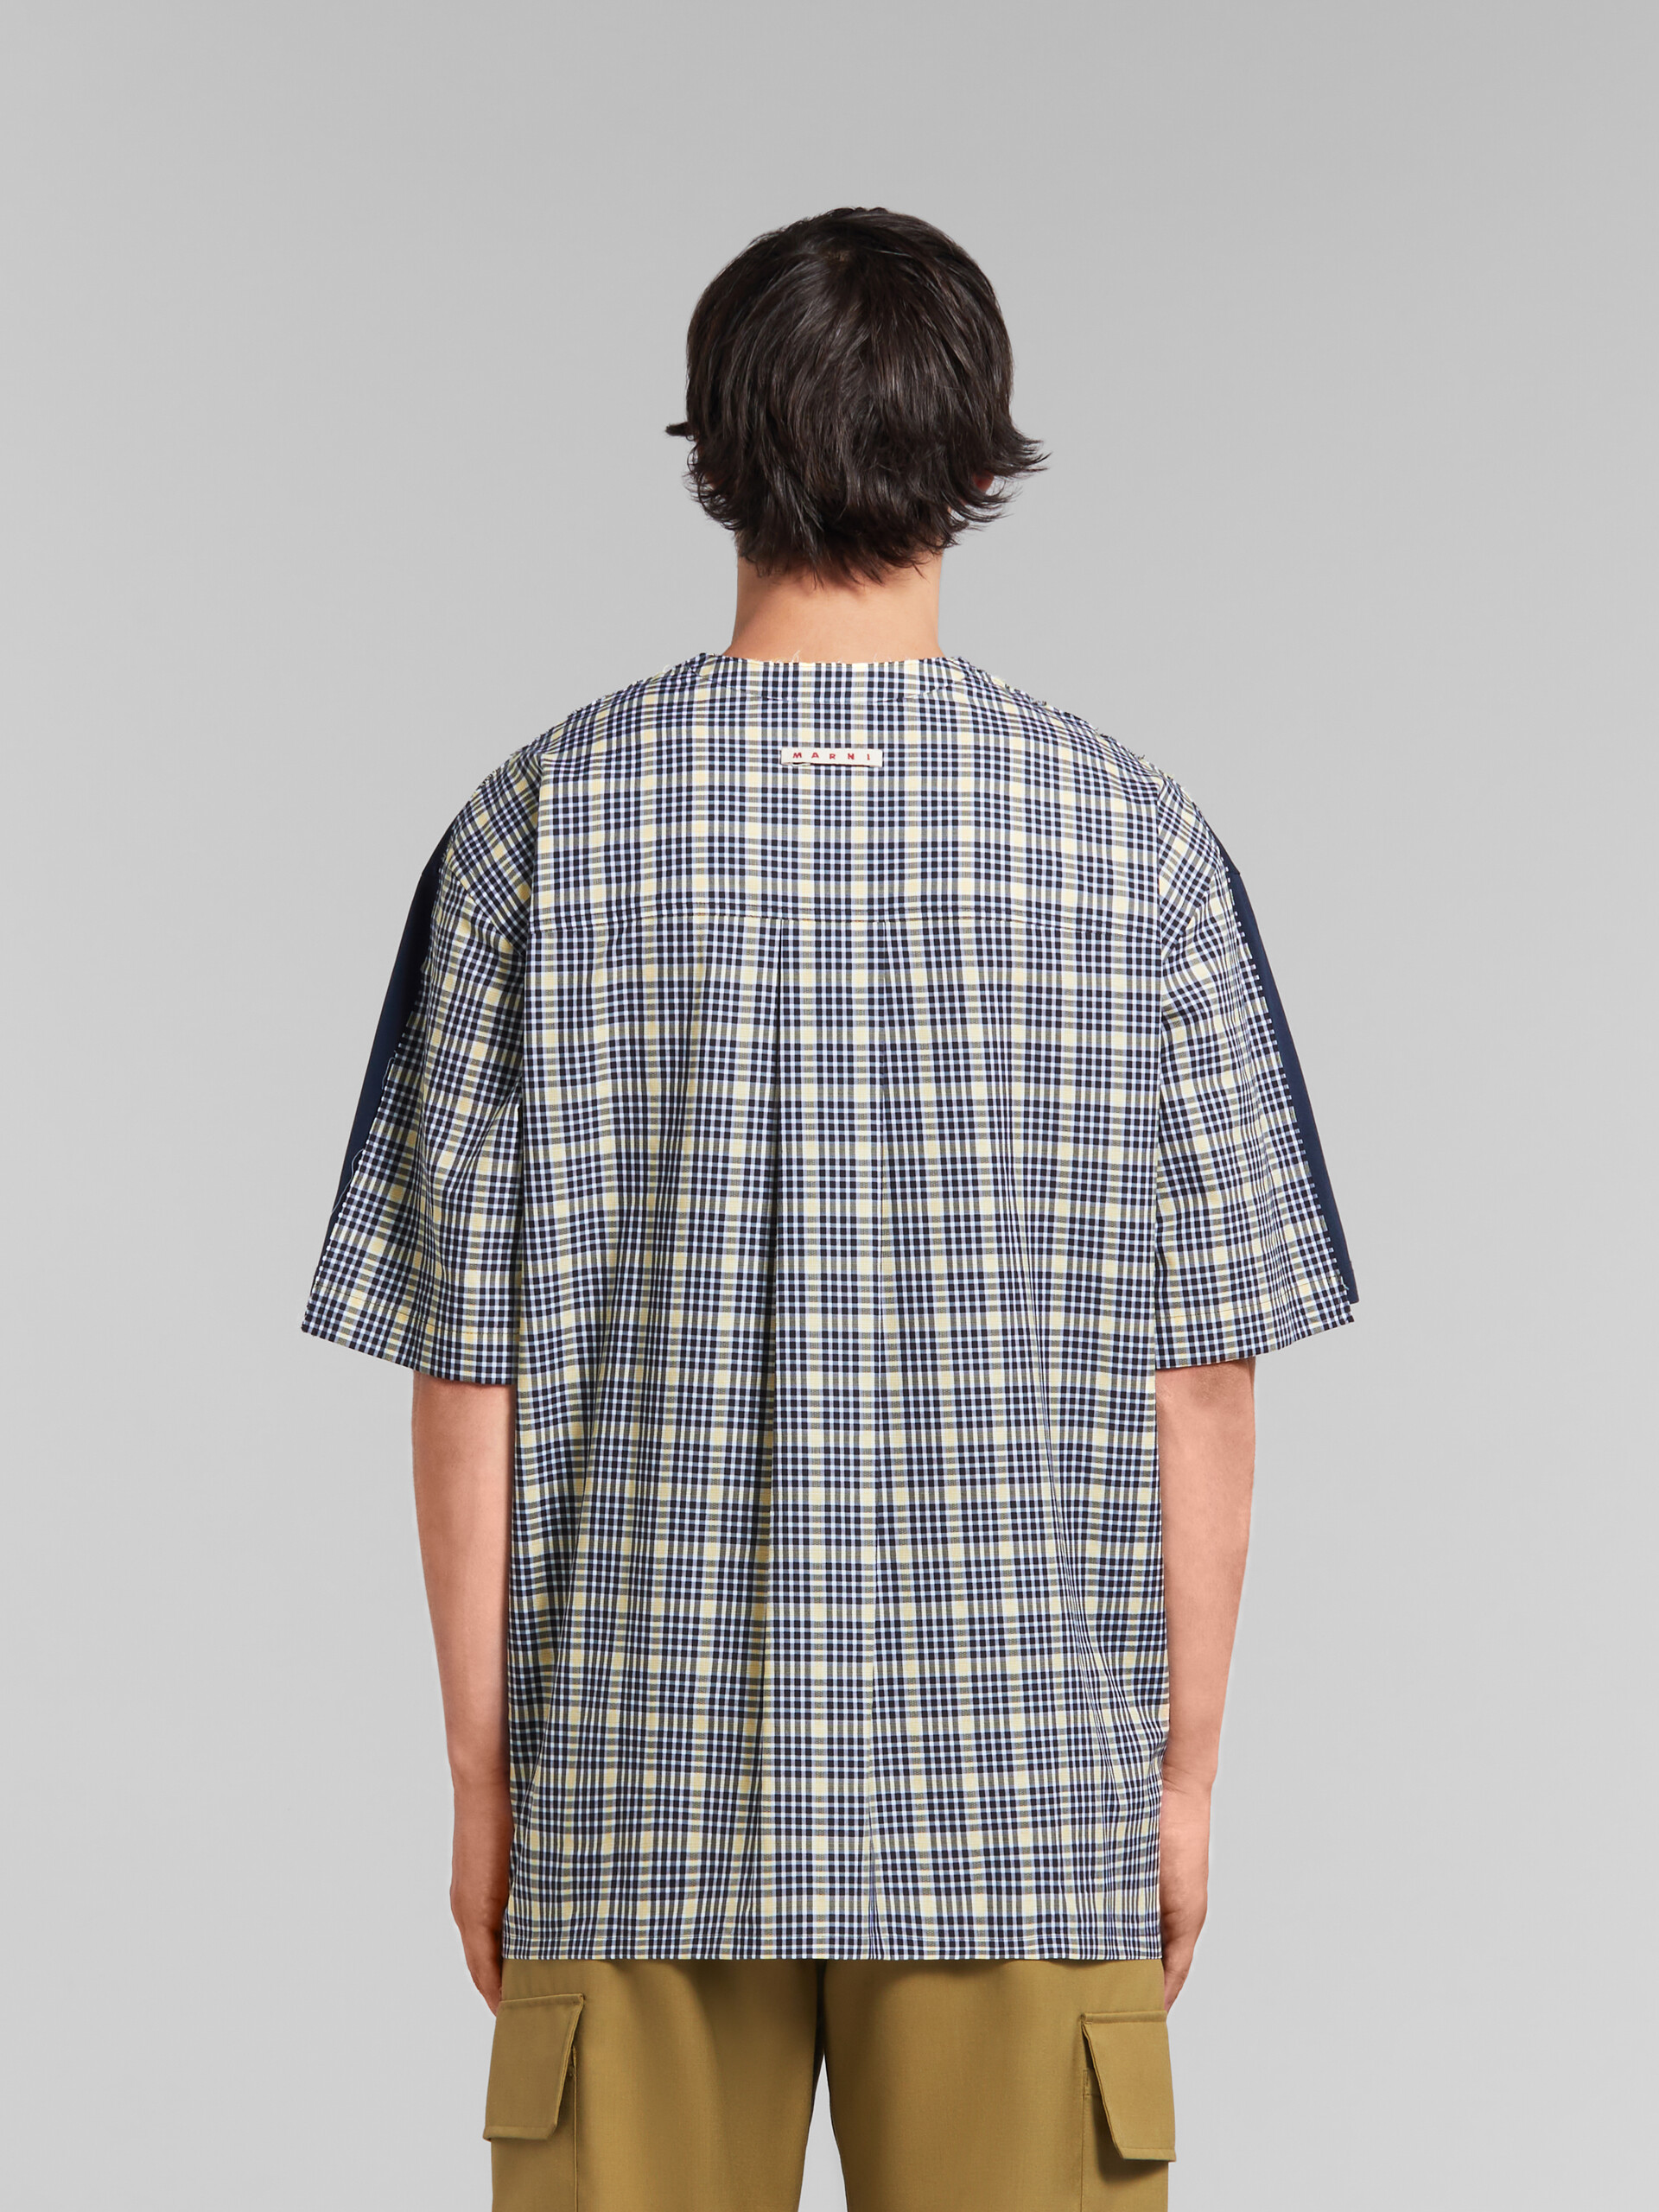 Camiseta azul intenso de algodón ecológico con rayas en la espalda - Camisetas - Image 3